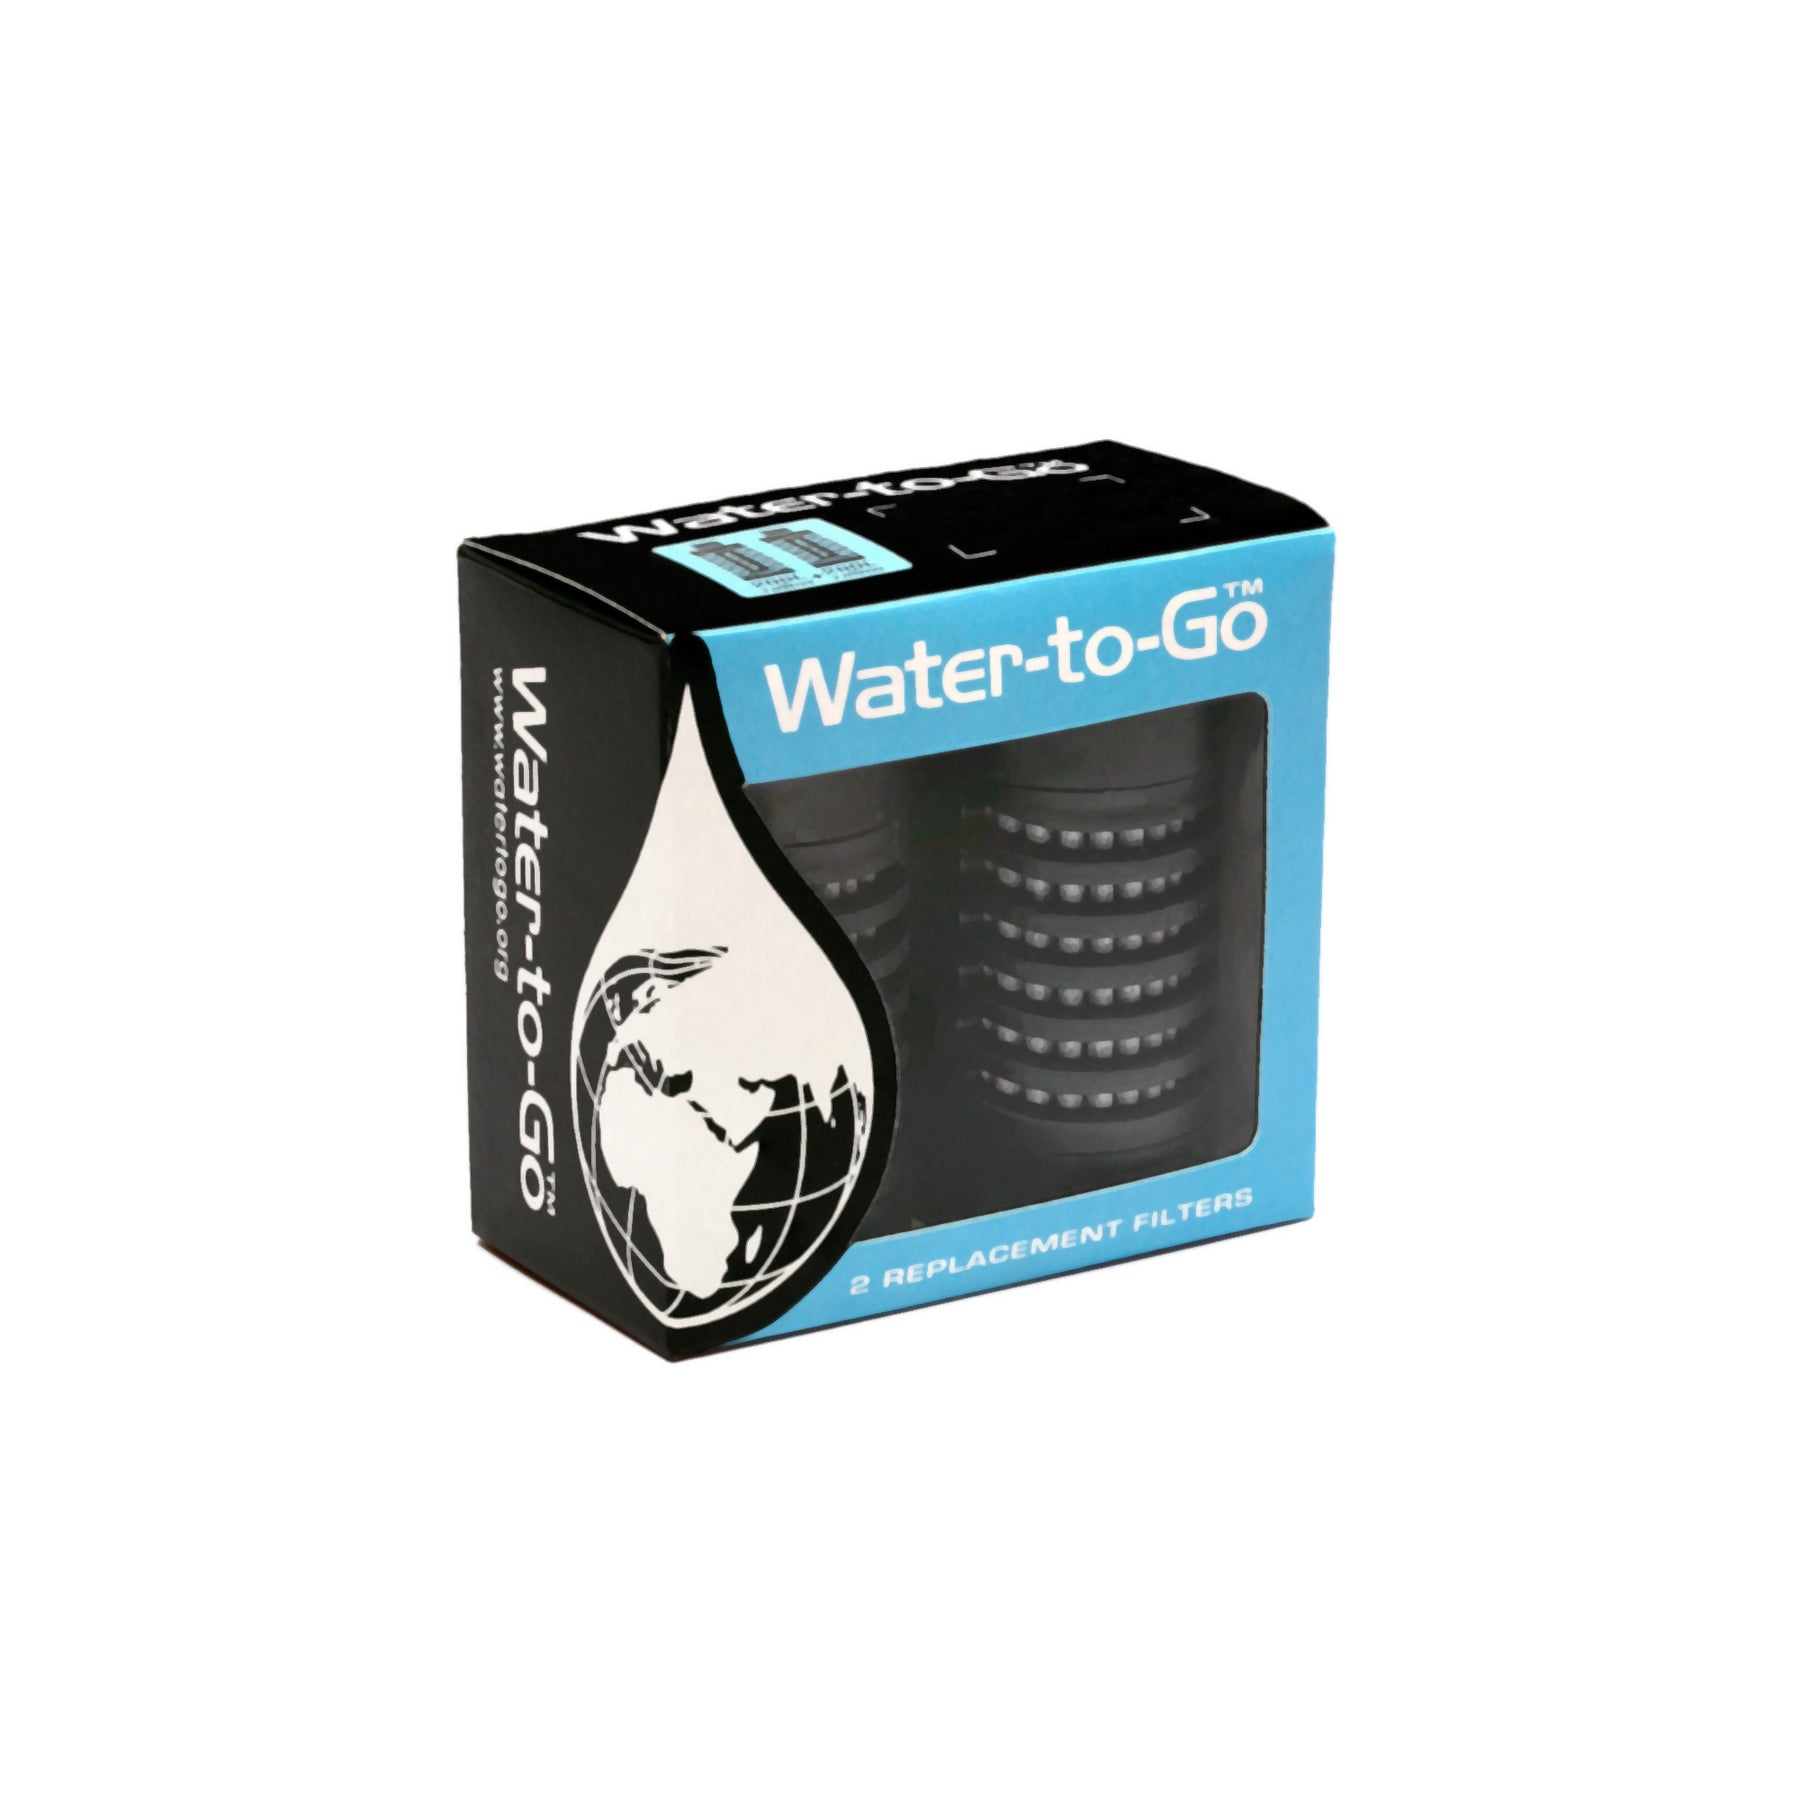 Water-To-Go la borraccia con filtro spaziale che purifica l'acqua